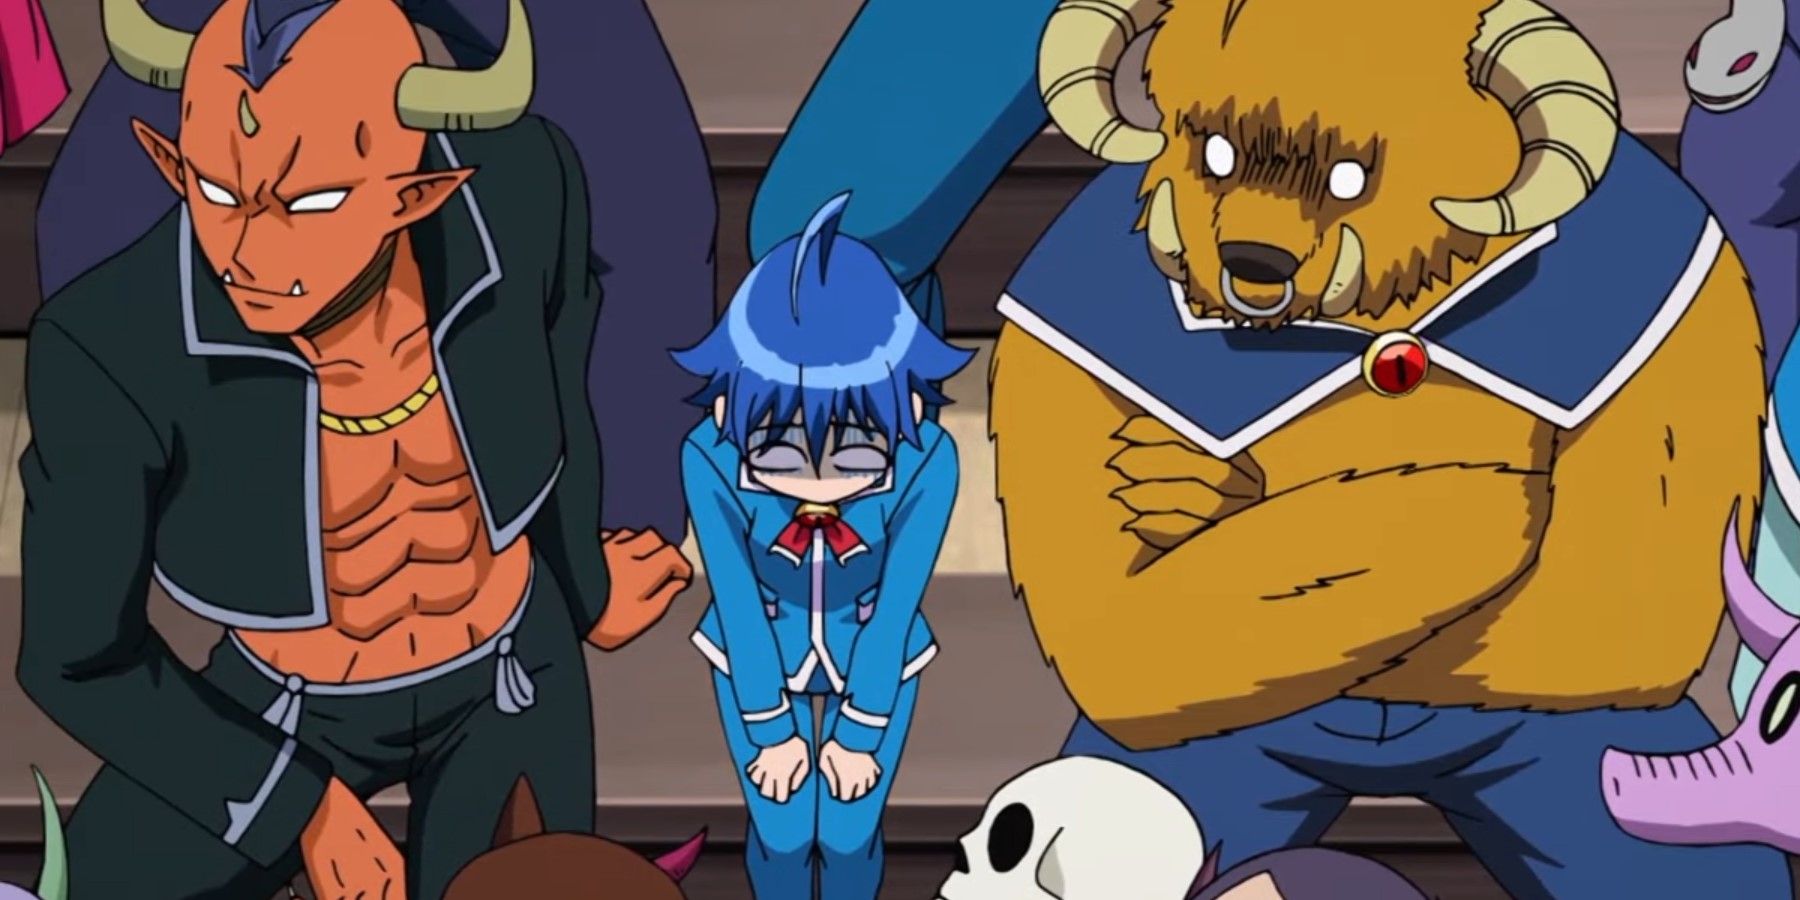 Iruma-kun Iruma in demon school surrounded by demons